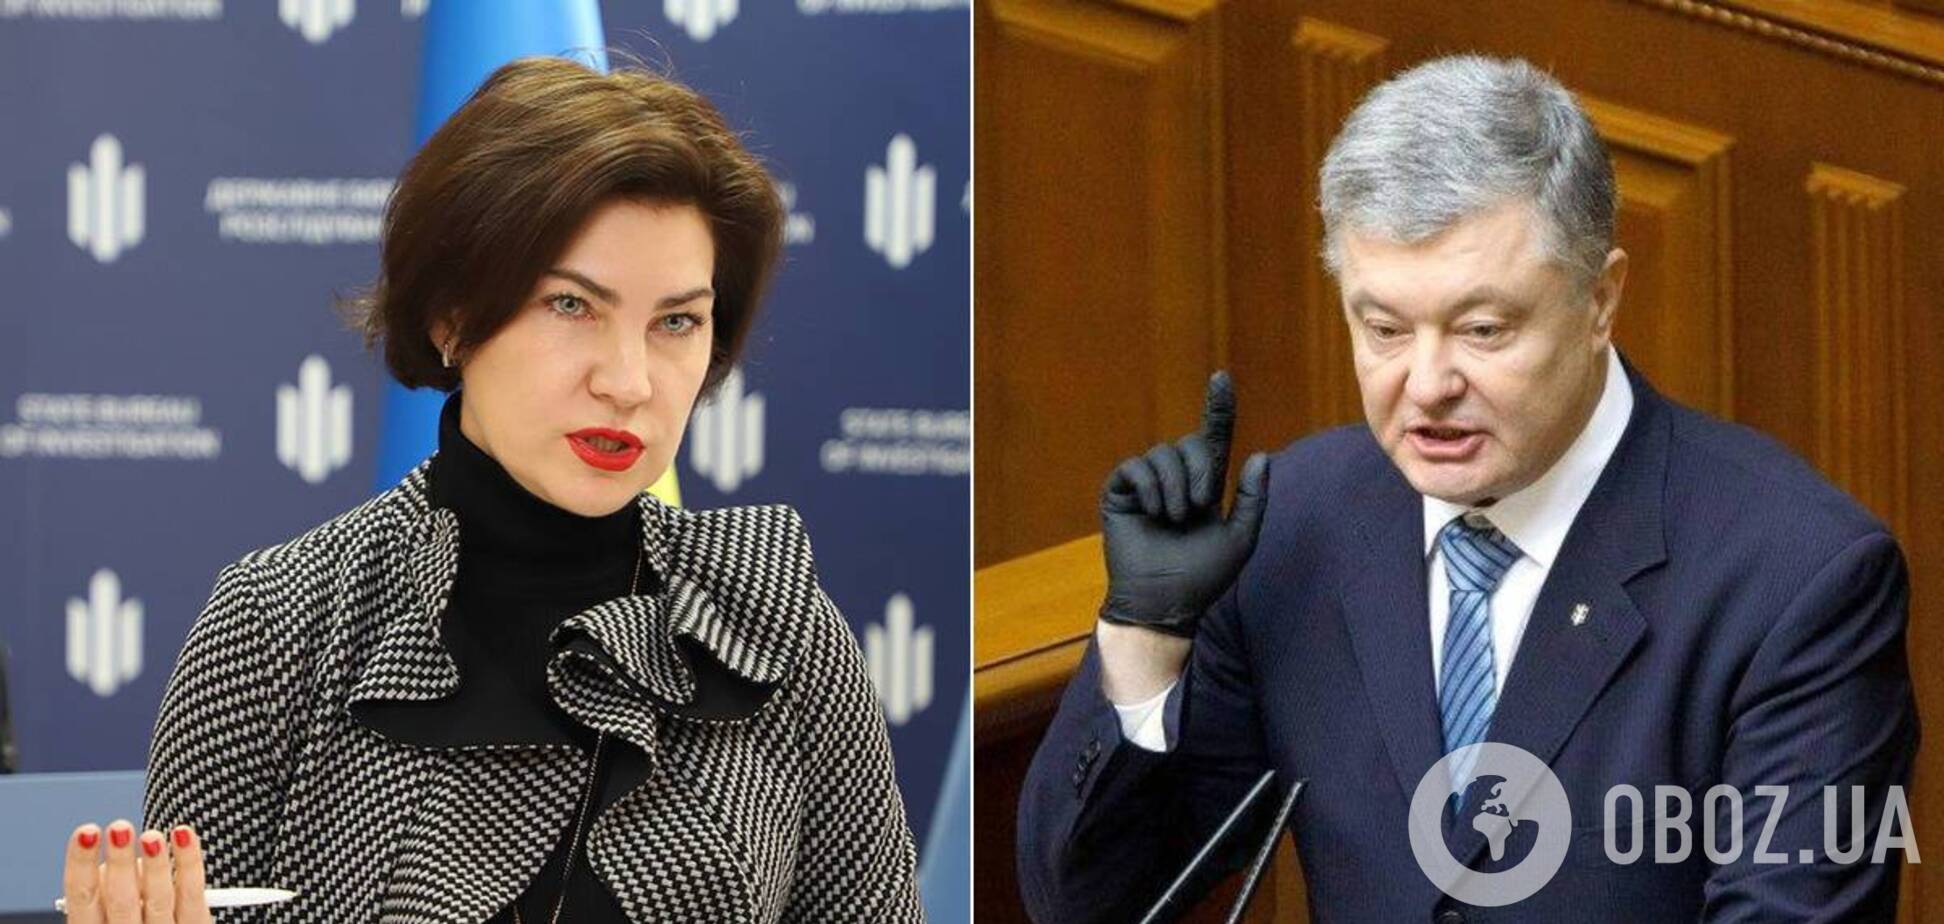 Ирина Венедиктова незаконно выписала подозрение Петру Порошенко